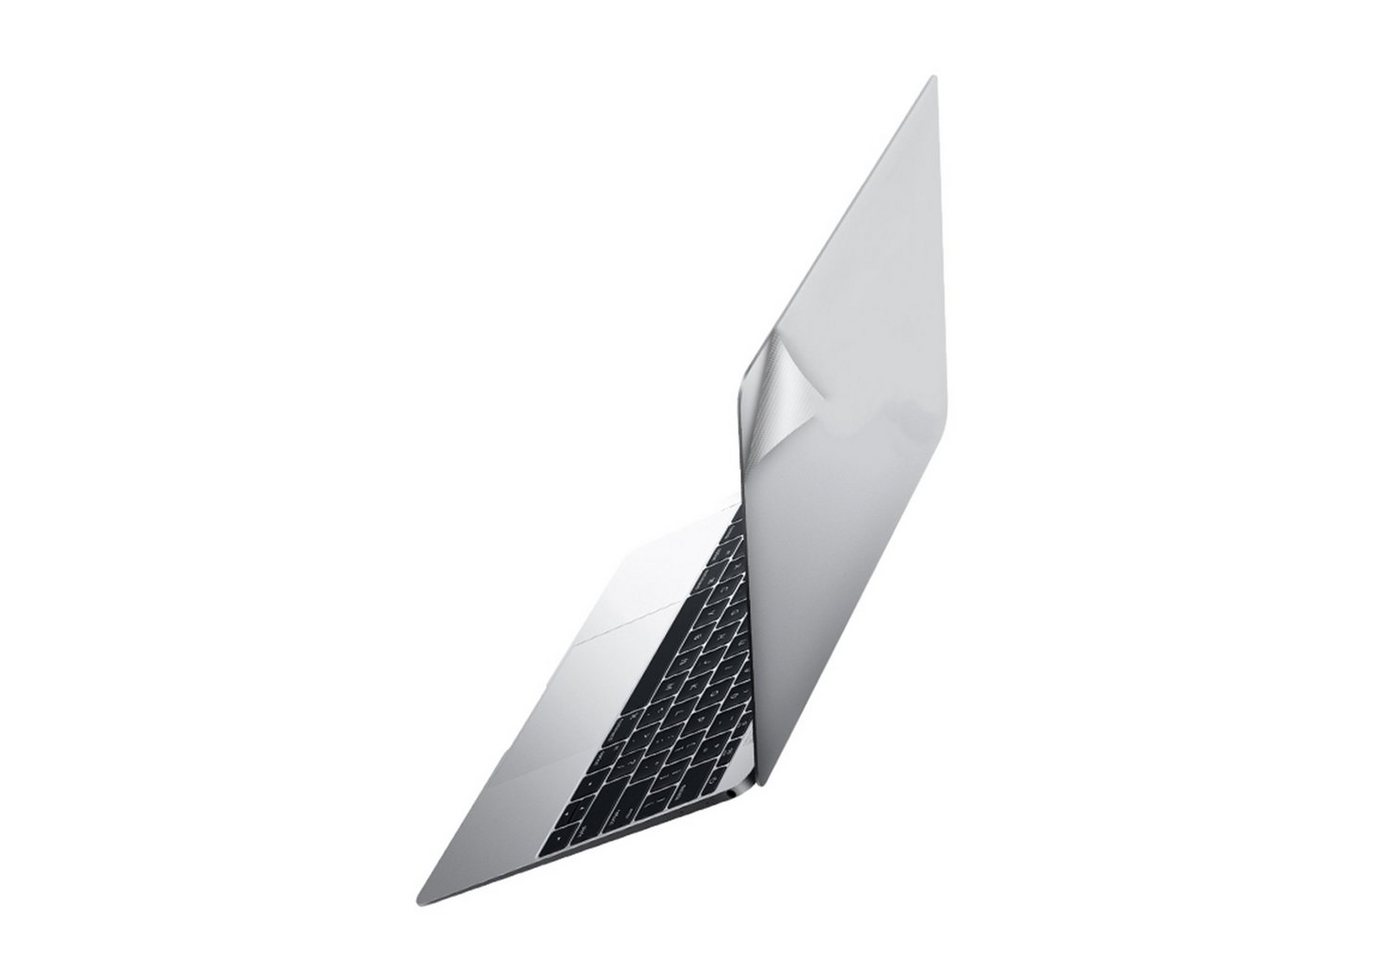 KMP Creative Lifesytle Product Schutzfolie Schutzfolie für 13 MacBook Air, Silver, (1-St), Schmutz- und wasserabweisende Oberfläche. Nur 0,2mm dick" von KMP Creative Lifesytle Product